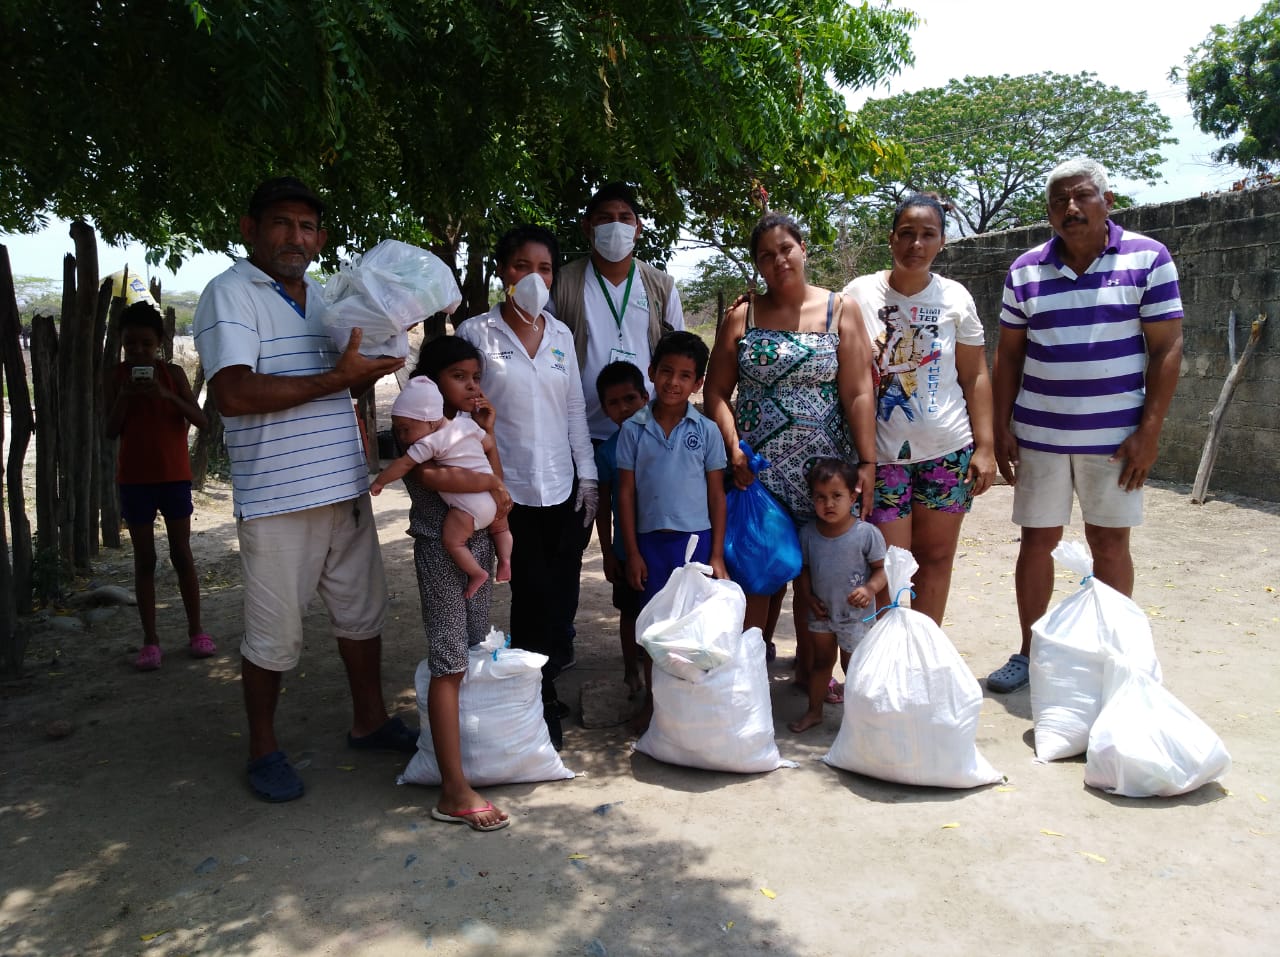 Kolumbien: Venezolanische Flüchtlinge erhalten Lebensmittelhilfe.